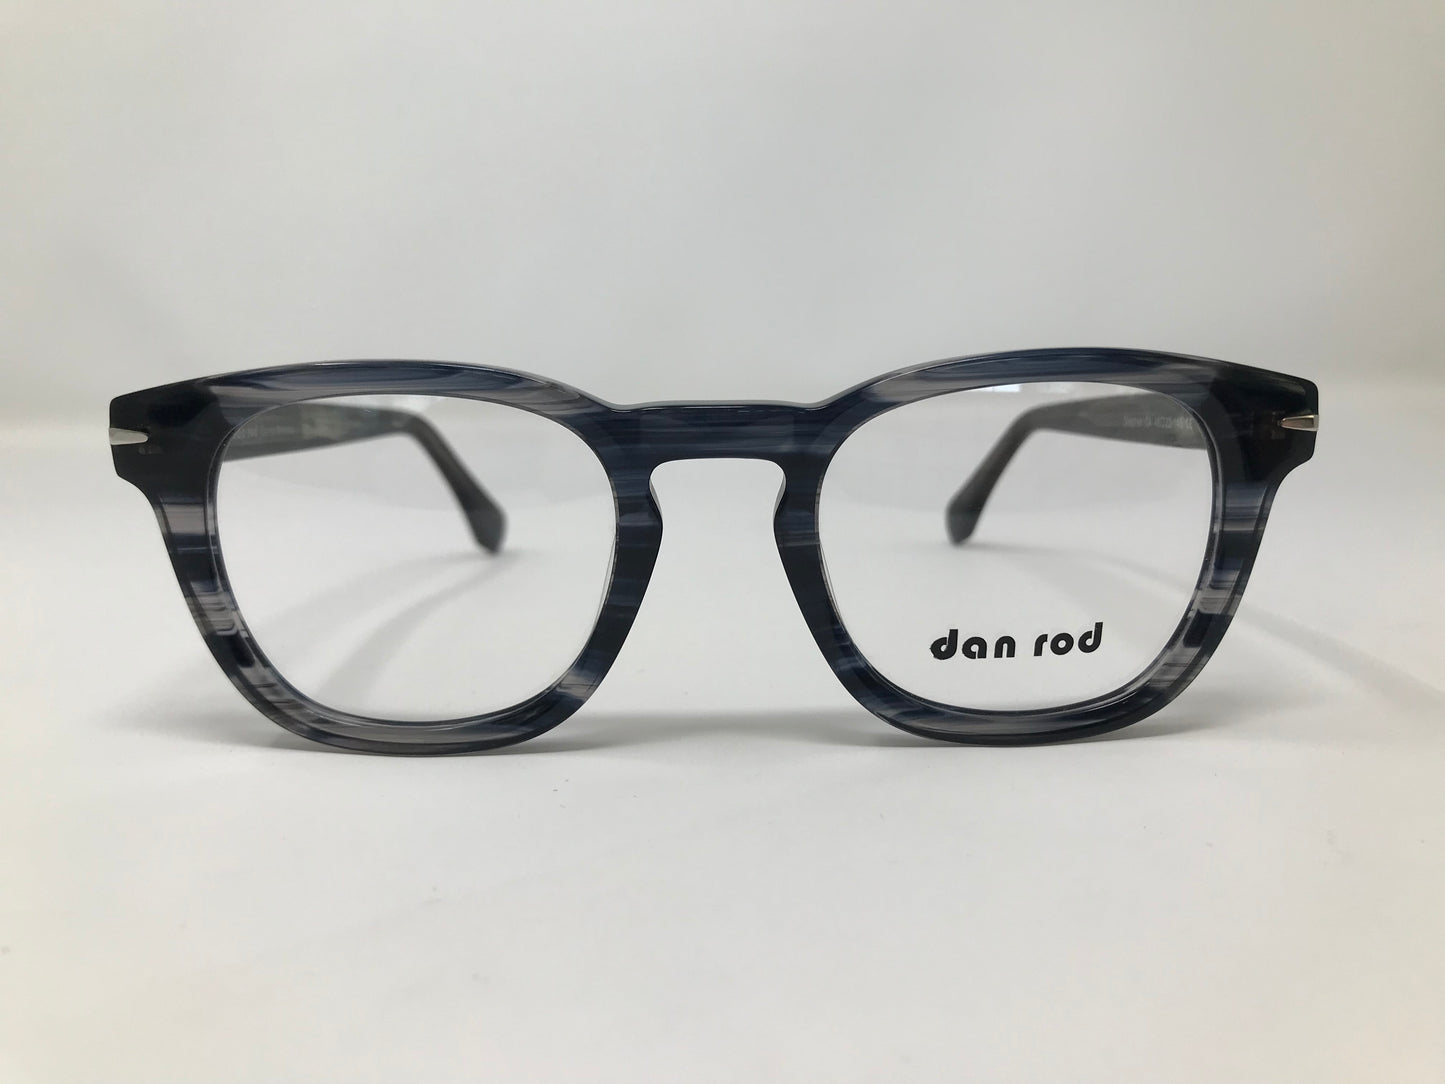 Dan Rod Eyeglasses - Stephen